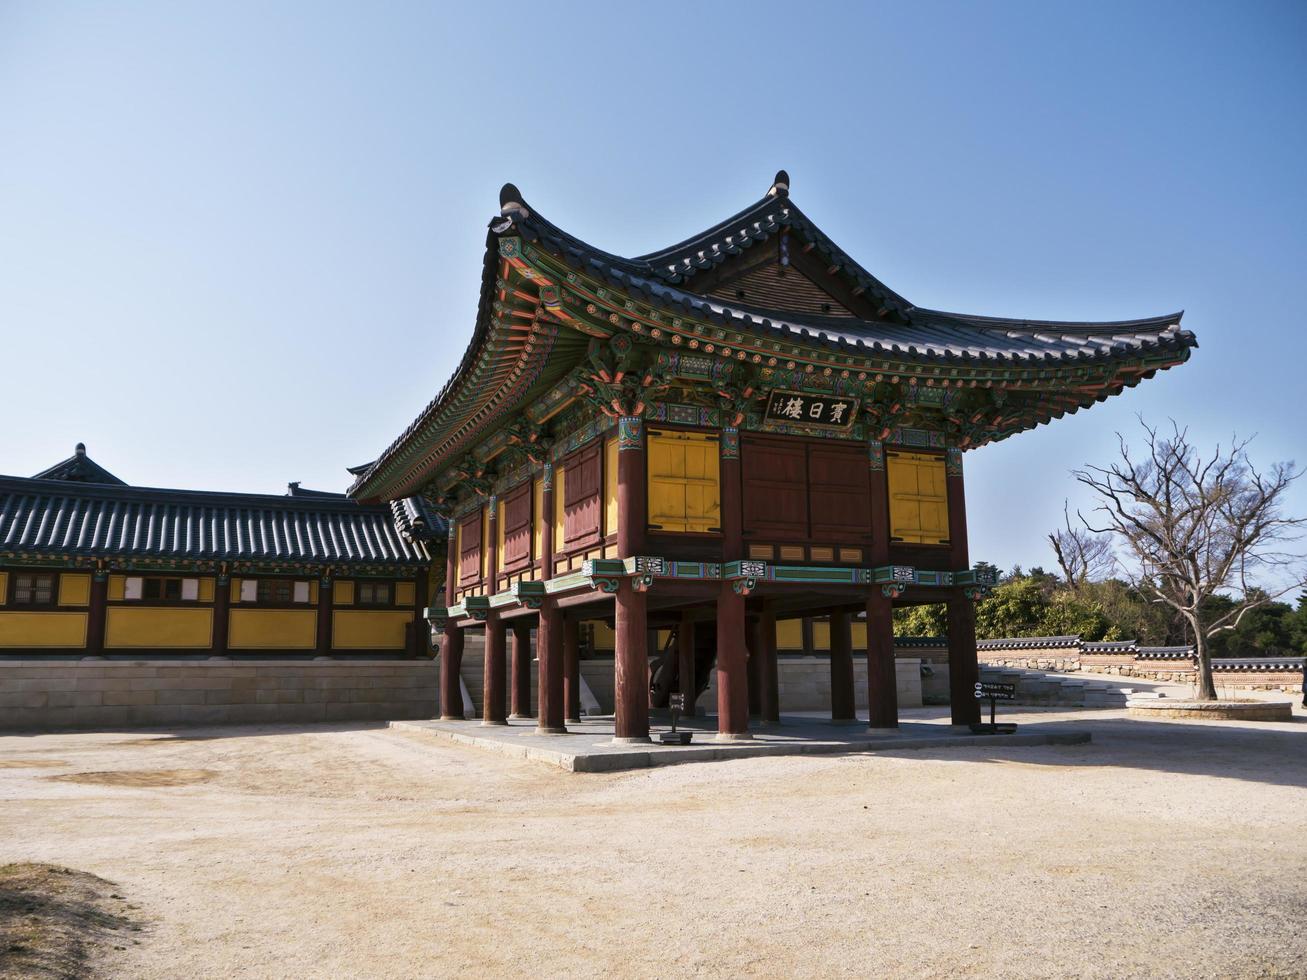 arquitectura tradicional coreana en el templo de naksansa, corea del sur foto